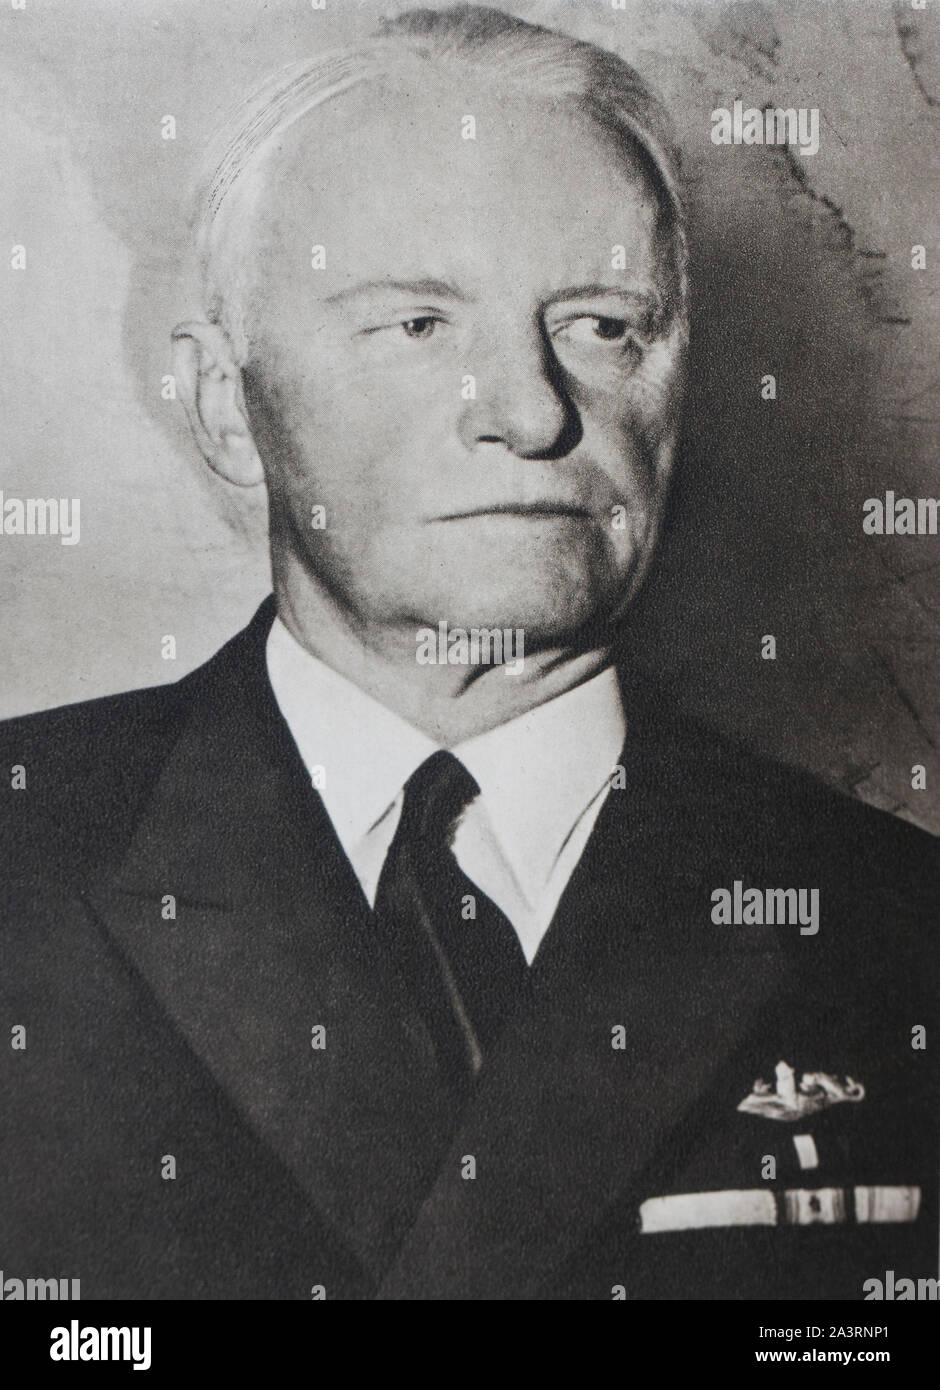 Almirante Chester William Nimiz, comandante en jefe de la Flota del Pacífico Americano y el organizador de la victoria naval. Foto de stock